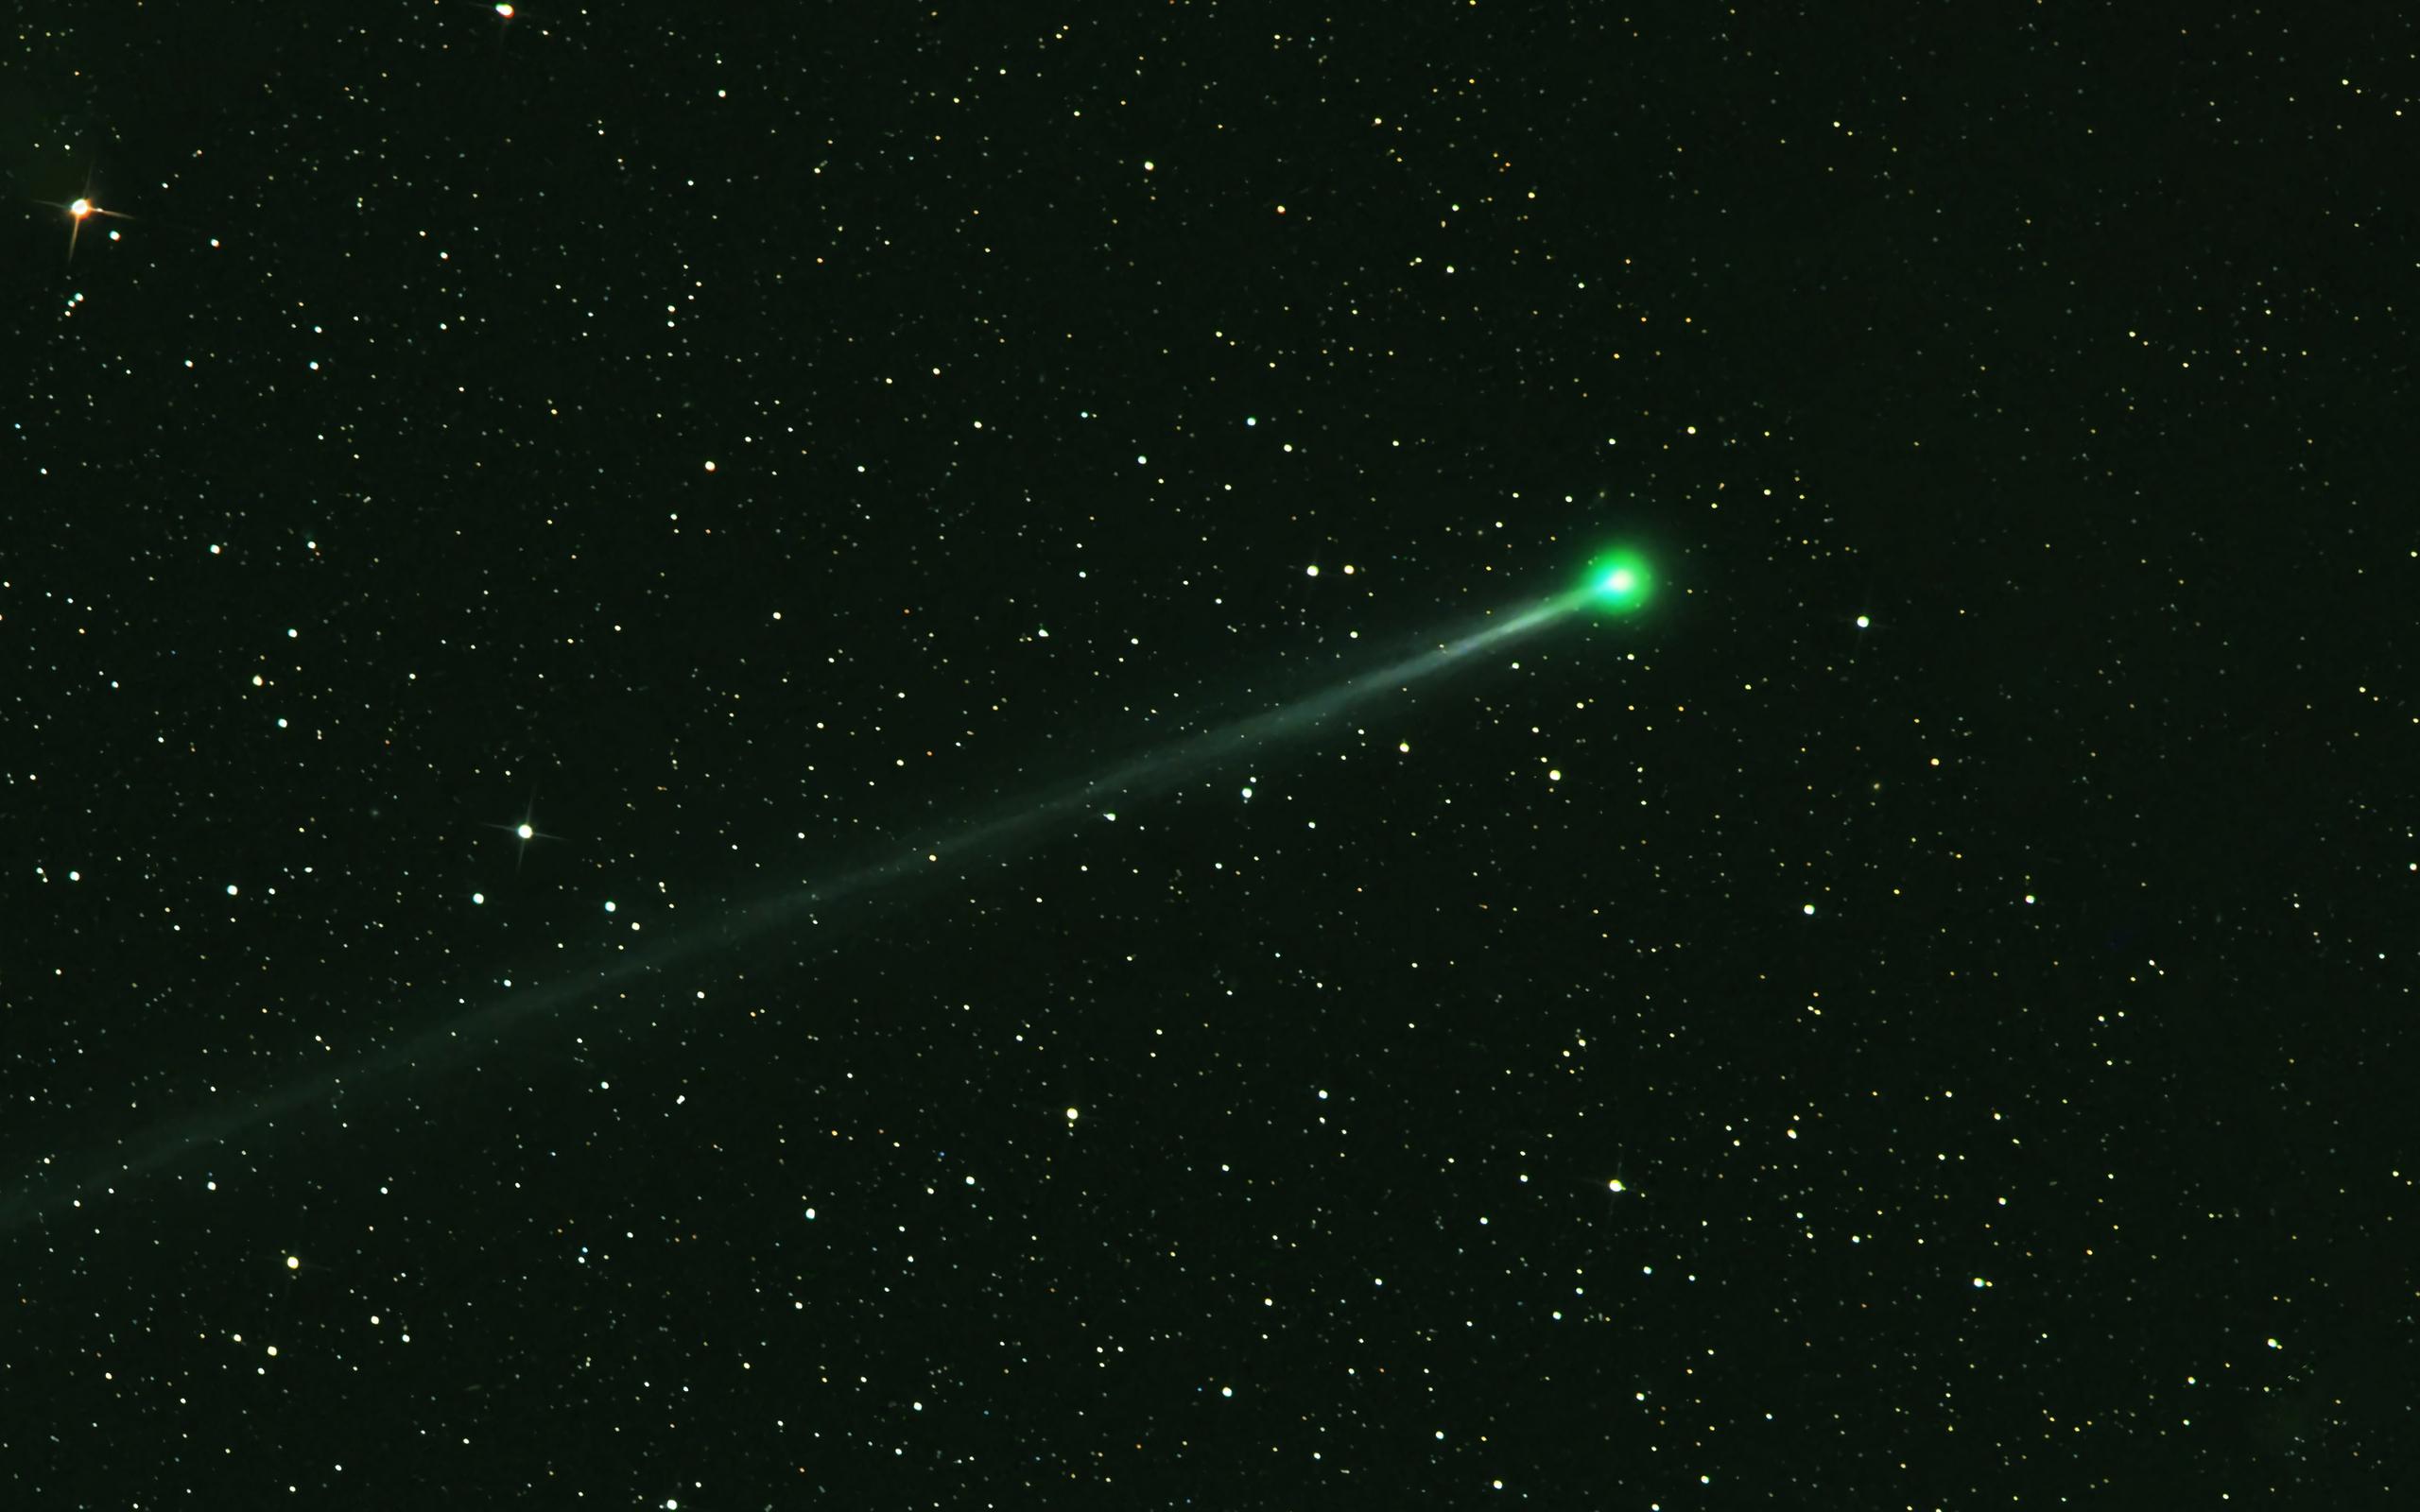 Зеленая комета получила свое название благодаря&nbsp;окружающему ореолу из газа и пыли, светящемуся зеленоватым оттенком.